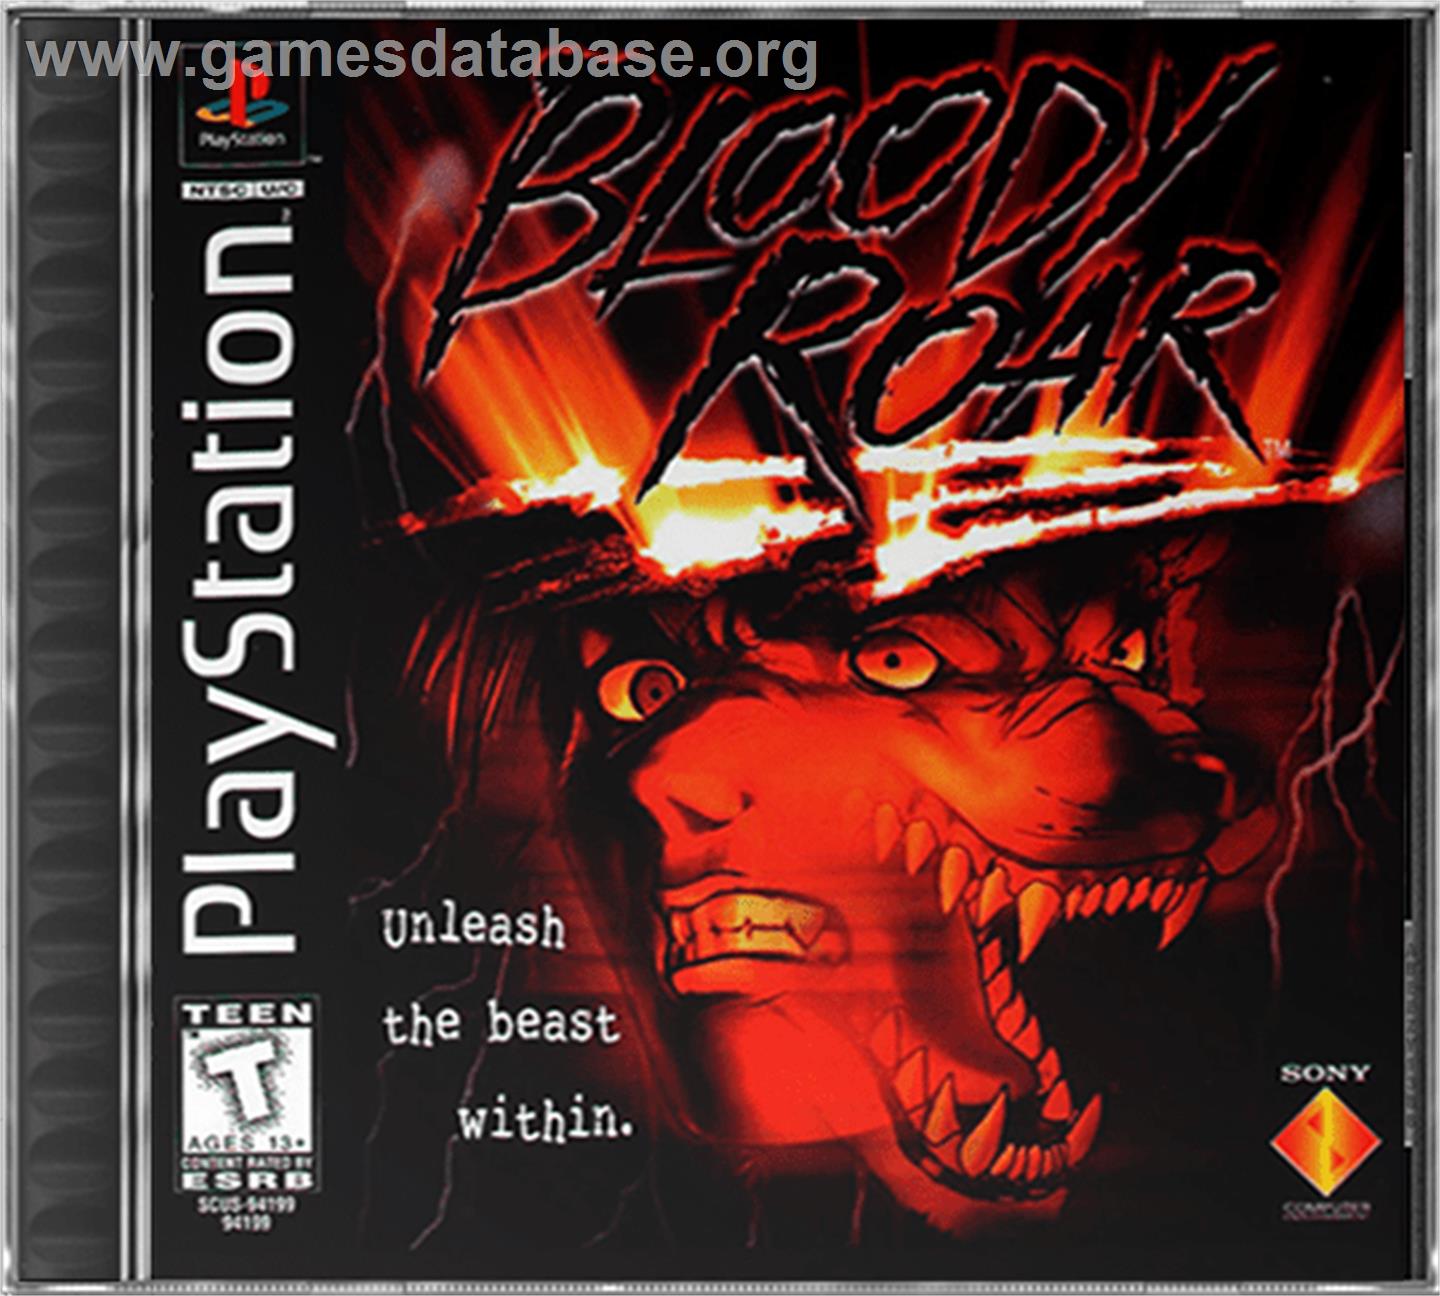 Bloody Roar - Sony Playstation - Artwork - Box